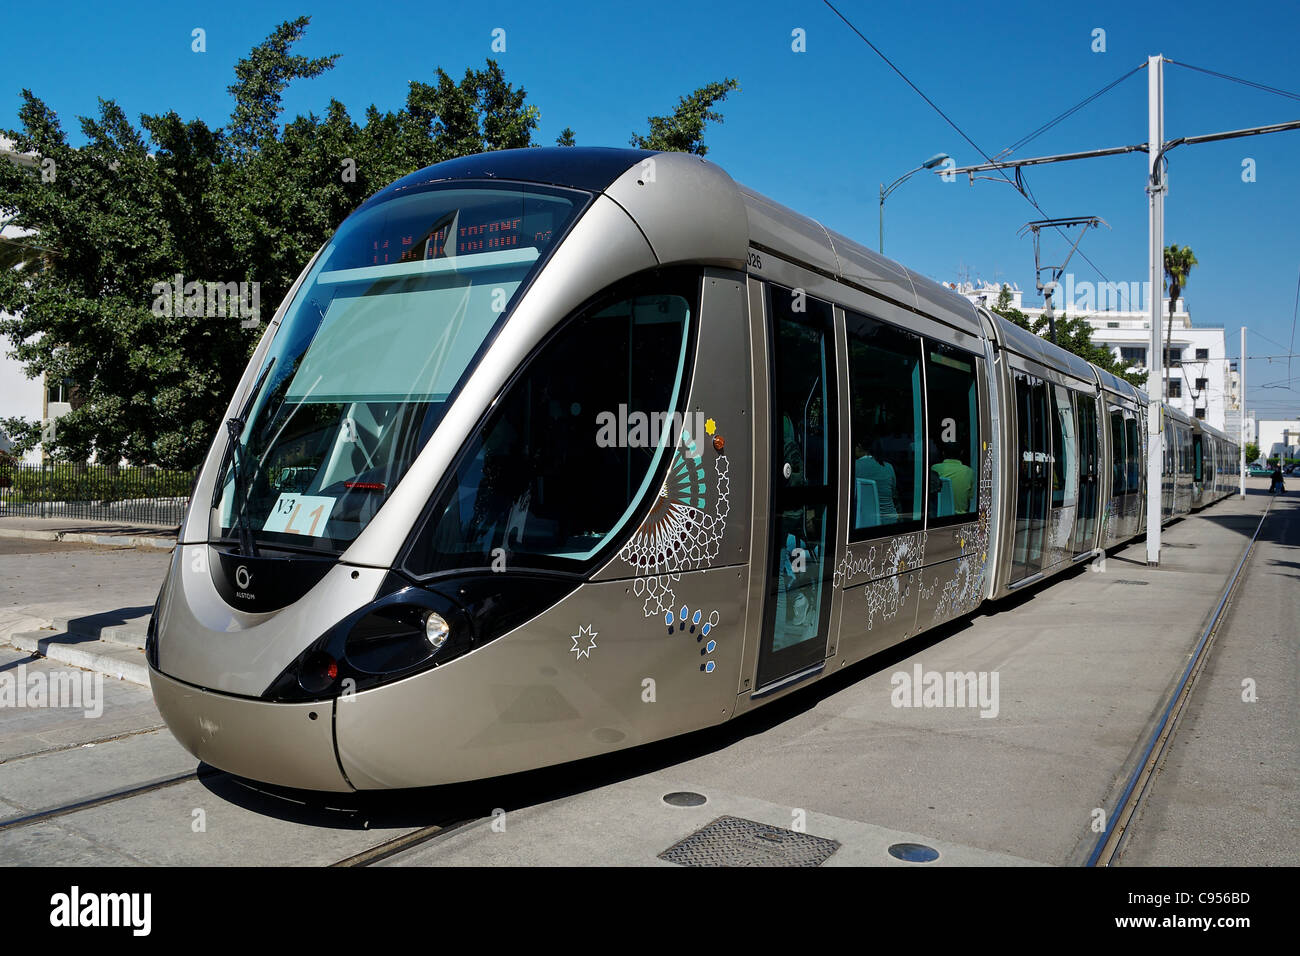 Nouveau tramway électrique dans les rues de Rabat, la capitale du Maroc Banque D'Images